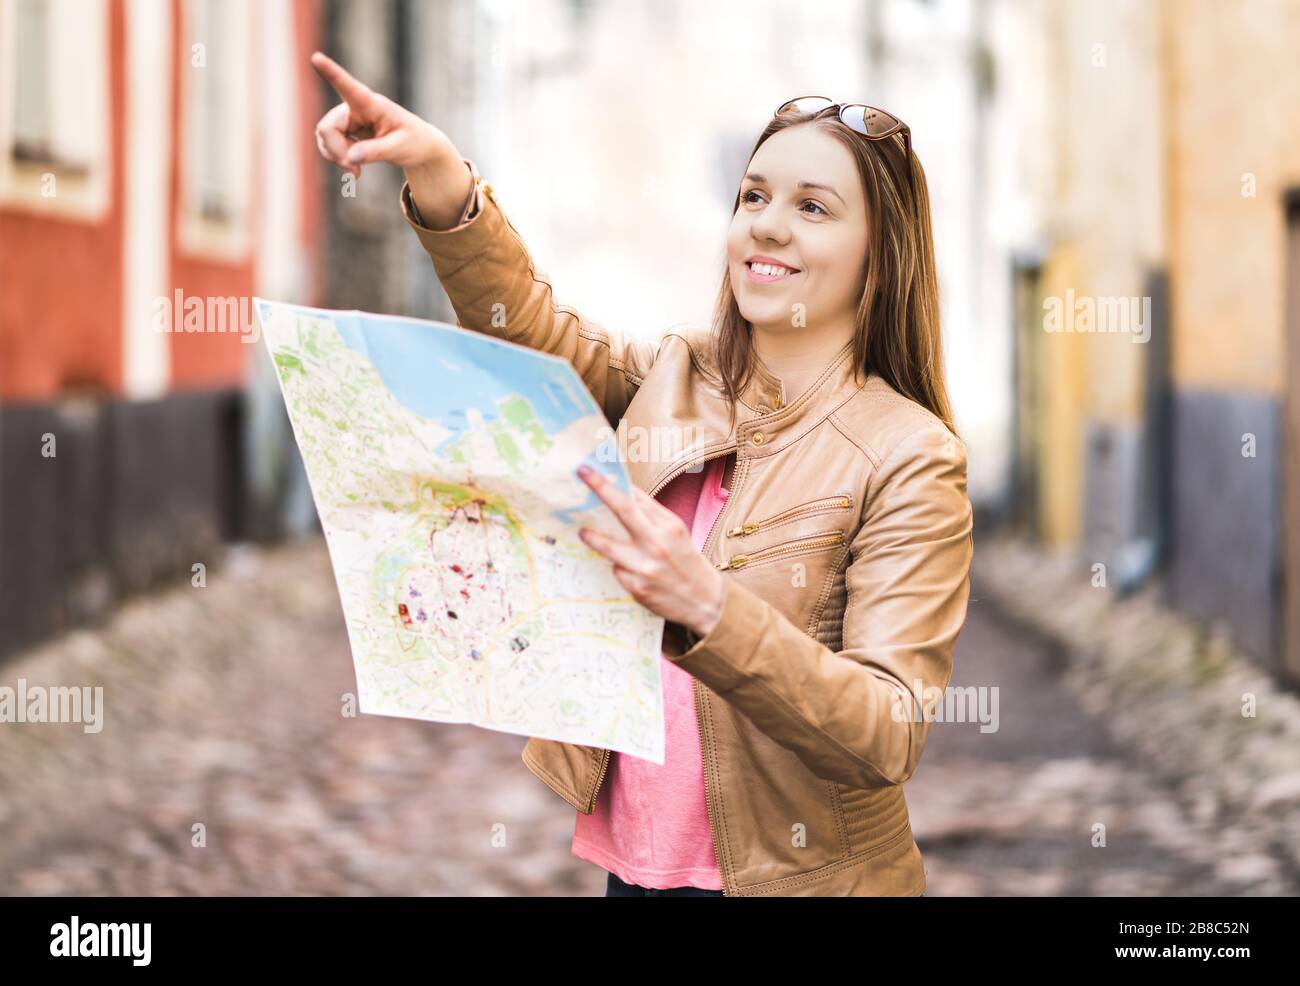 Touristen mit Karte in der Stadt. Frau, die in die richtige Richtung zeigt oder mit dem Finger eine Attraktion zeigt. Glücklicher Reisender mit Fremdenführer. Stockfoto